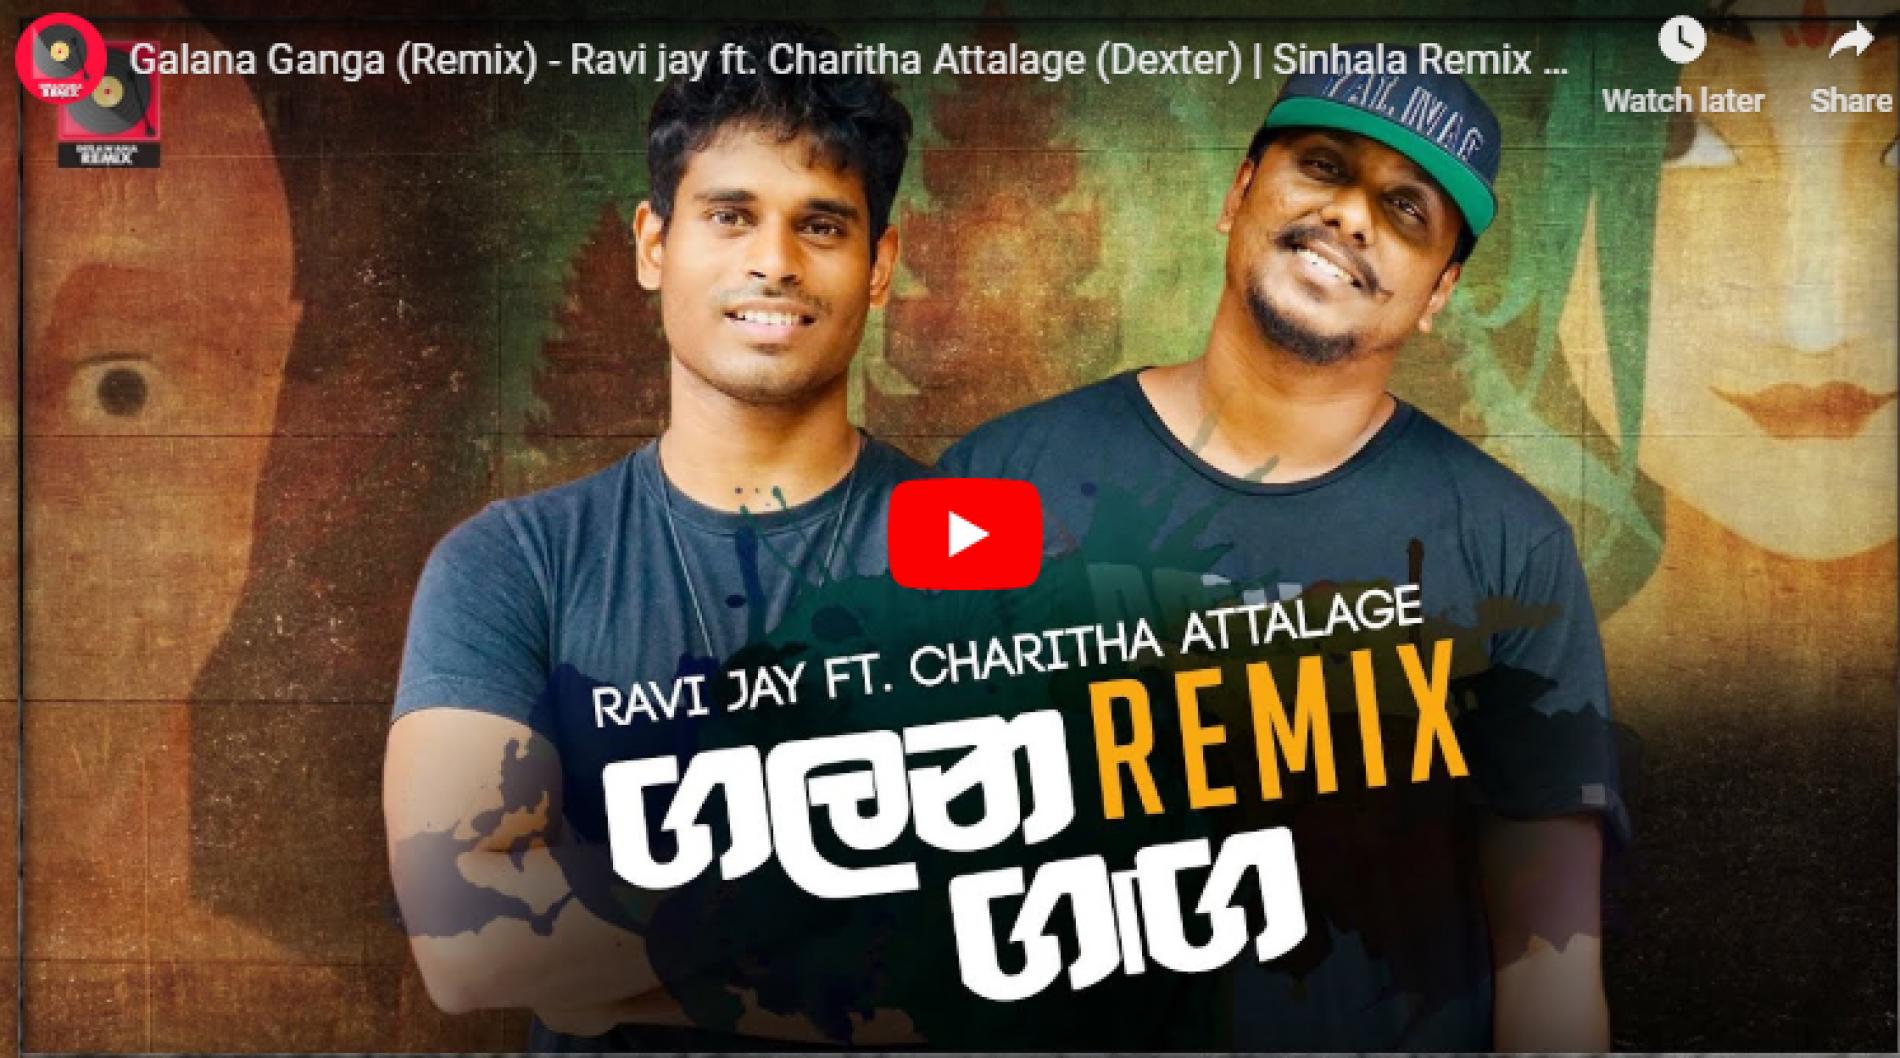 Galana Ganga – Ravi Jay Ft Charitha Attalage (Zack N Remix)